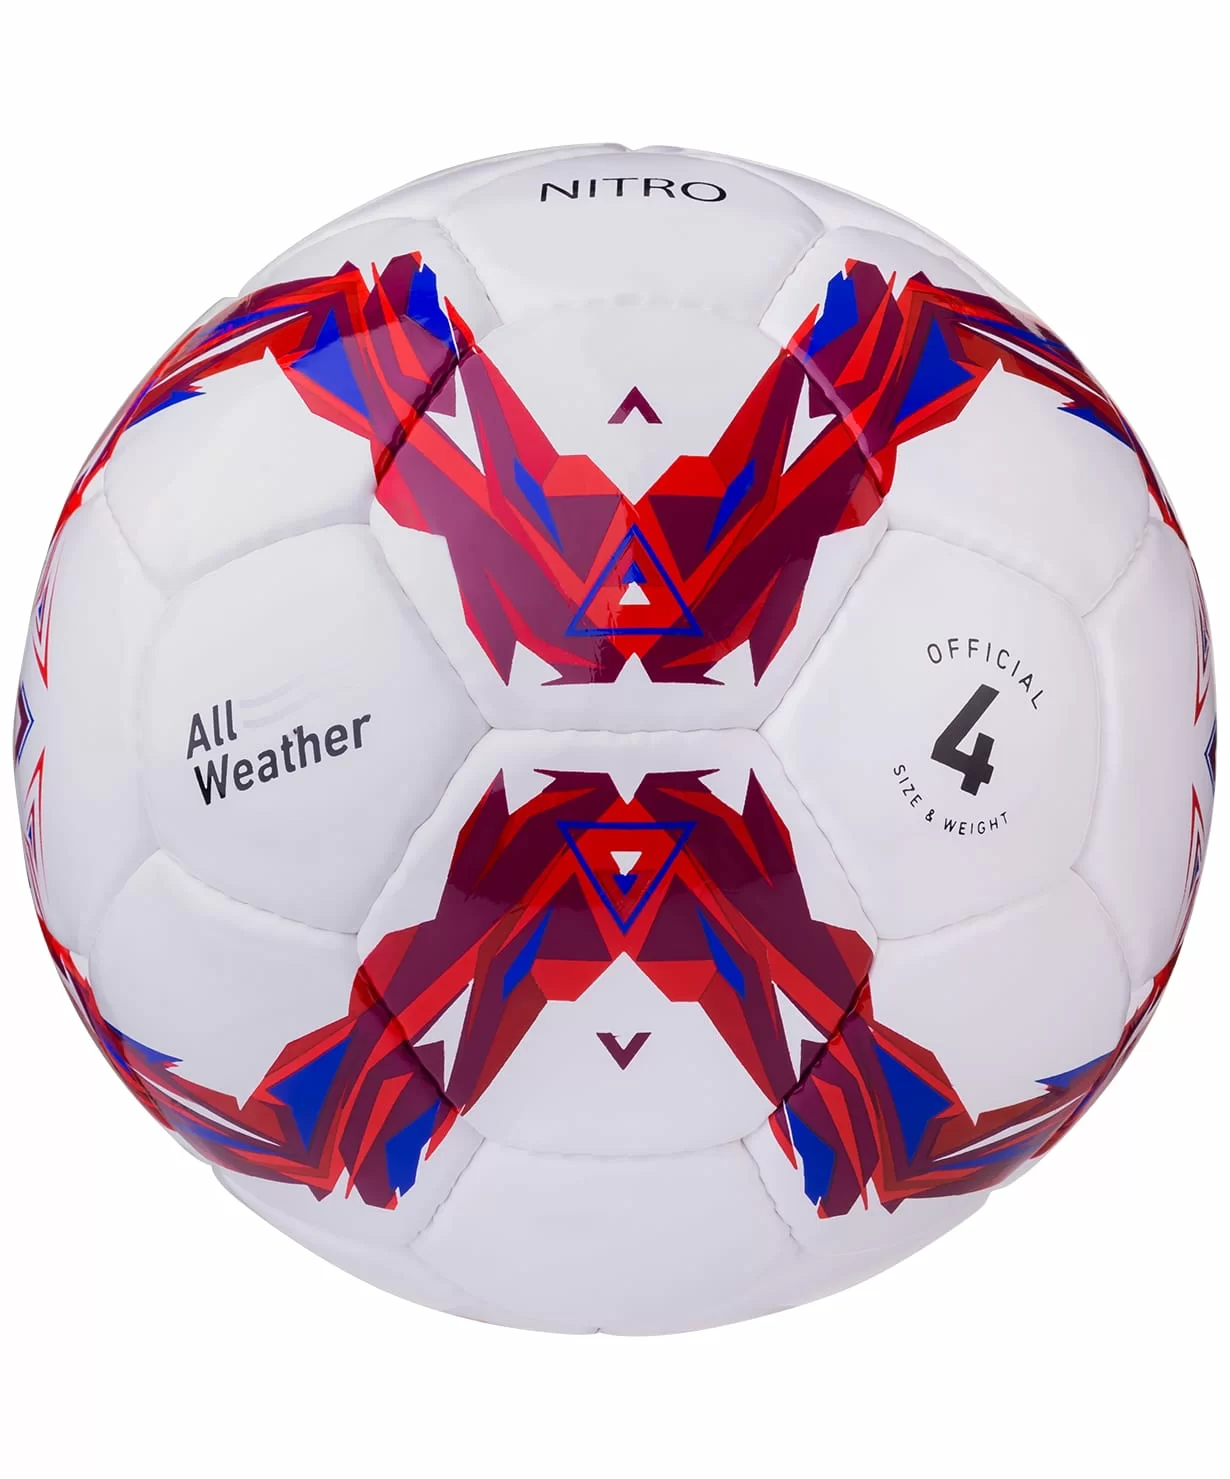 Реальное фото Мяч футбольный Jogel JS-710 Nitro №4  12410 от магазина СпортСЕ